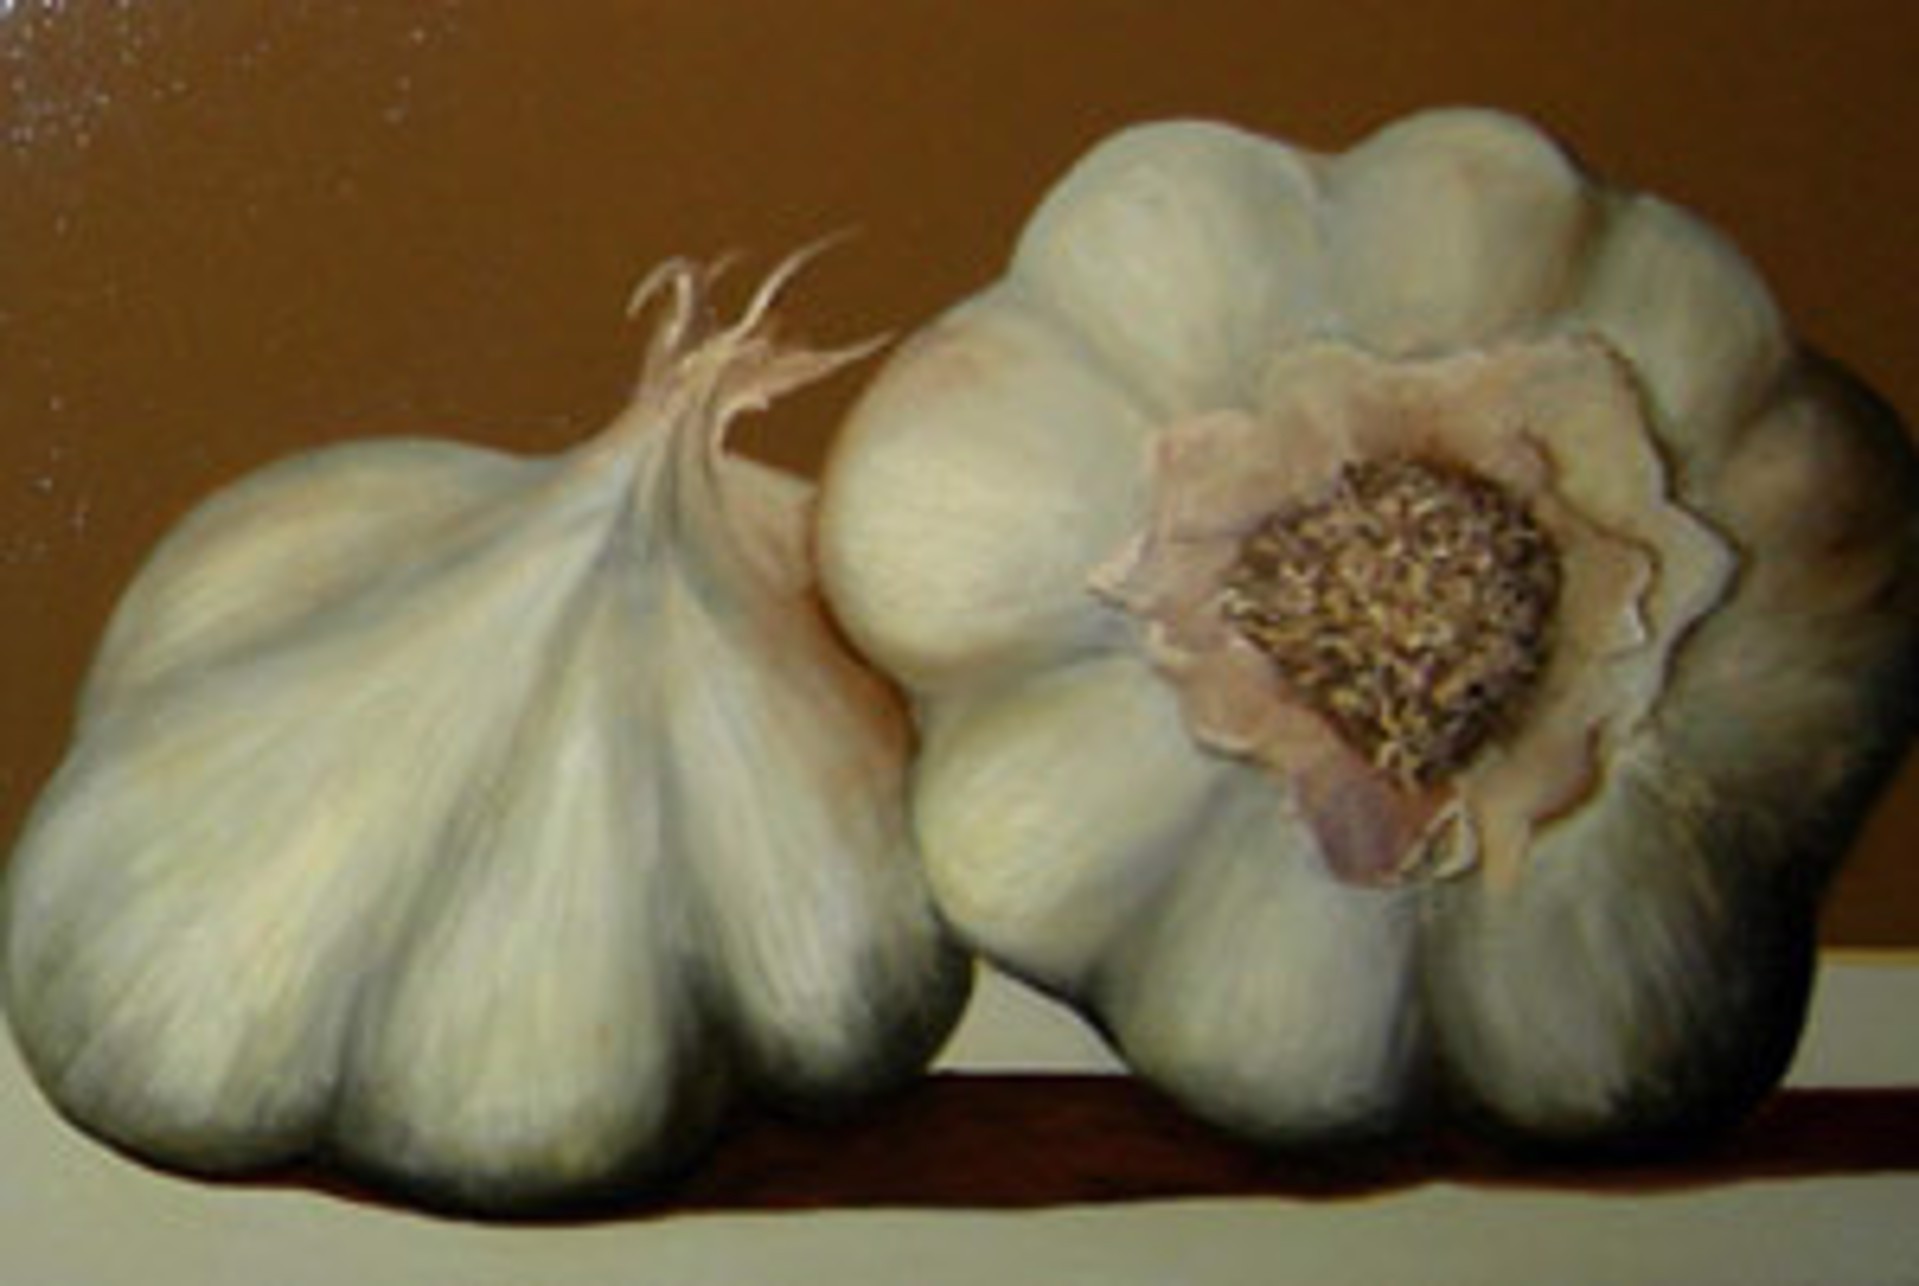 Garlic by Bill Chisholm